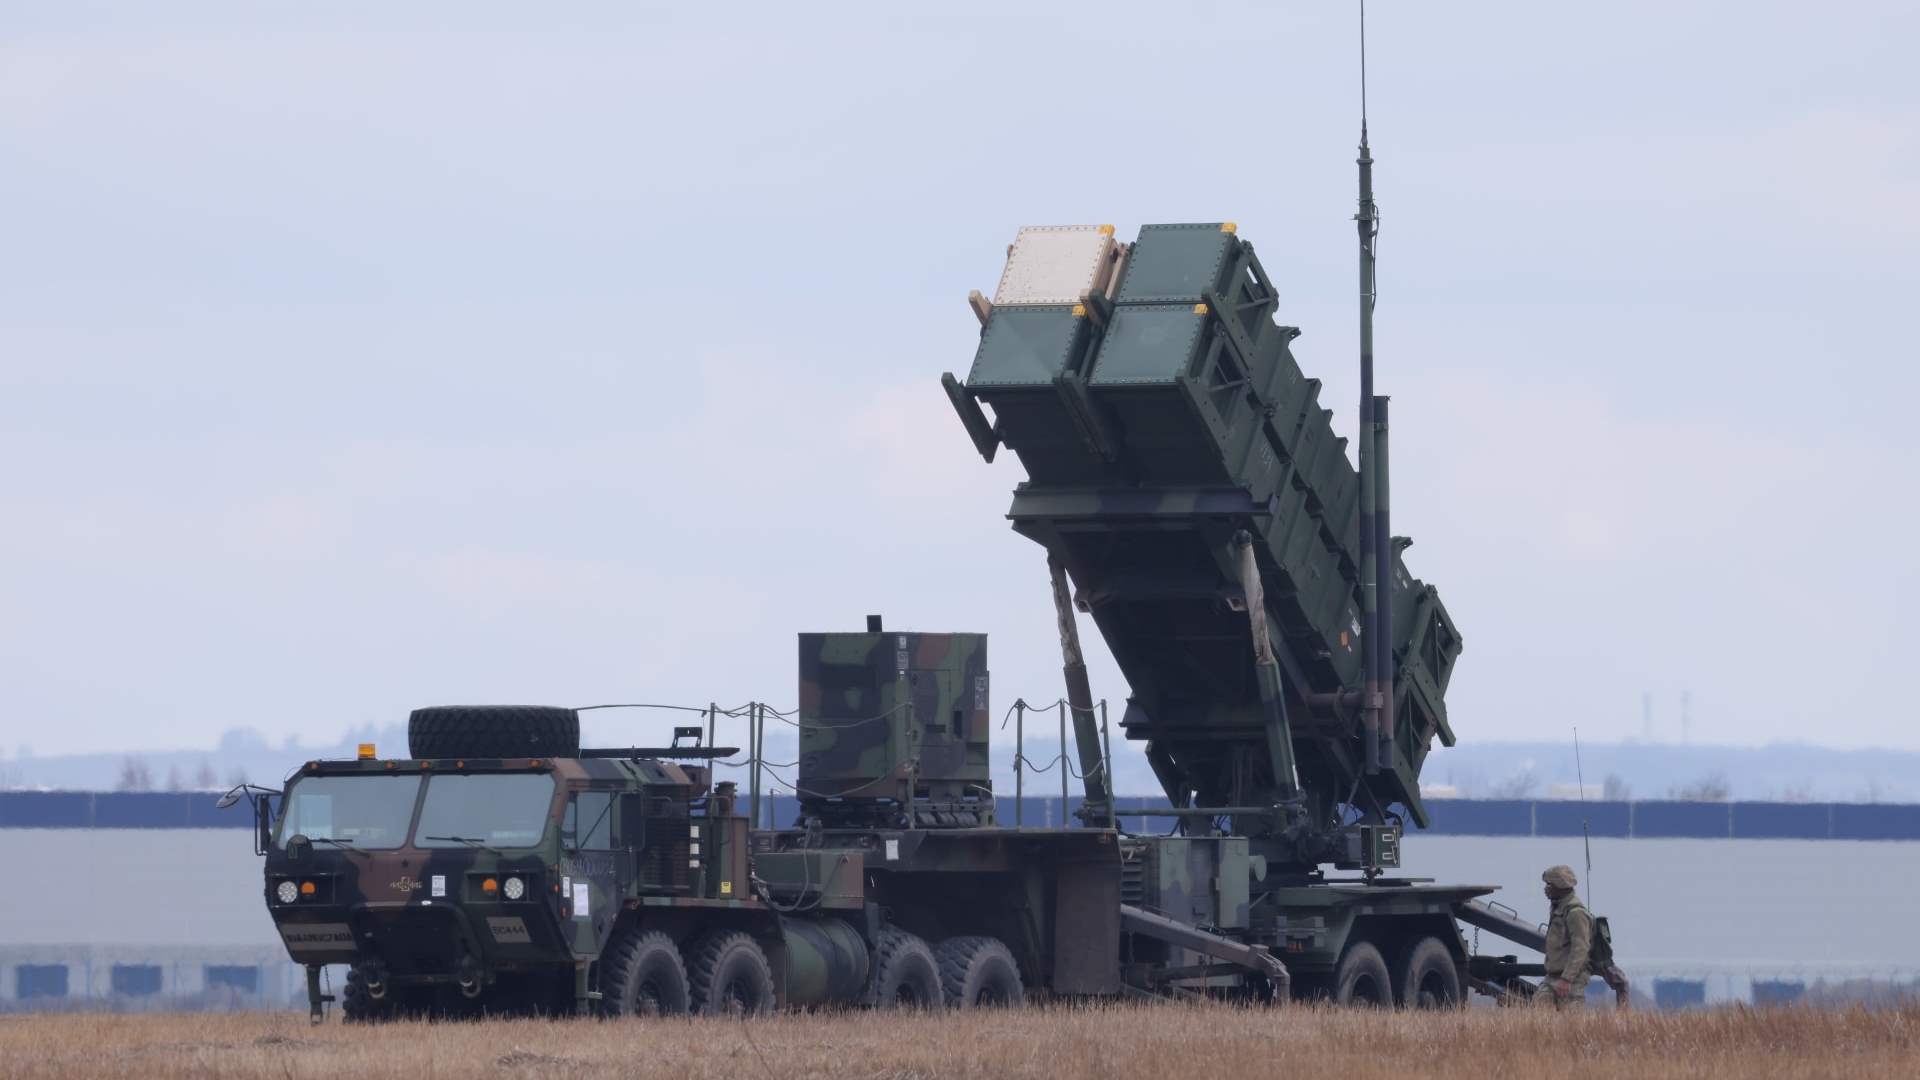 رومانيا تقرر إرسال منظومة صواريخ باتريوت إلى أوكرانيا